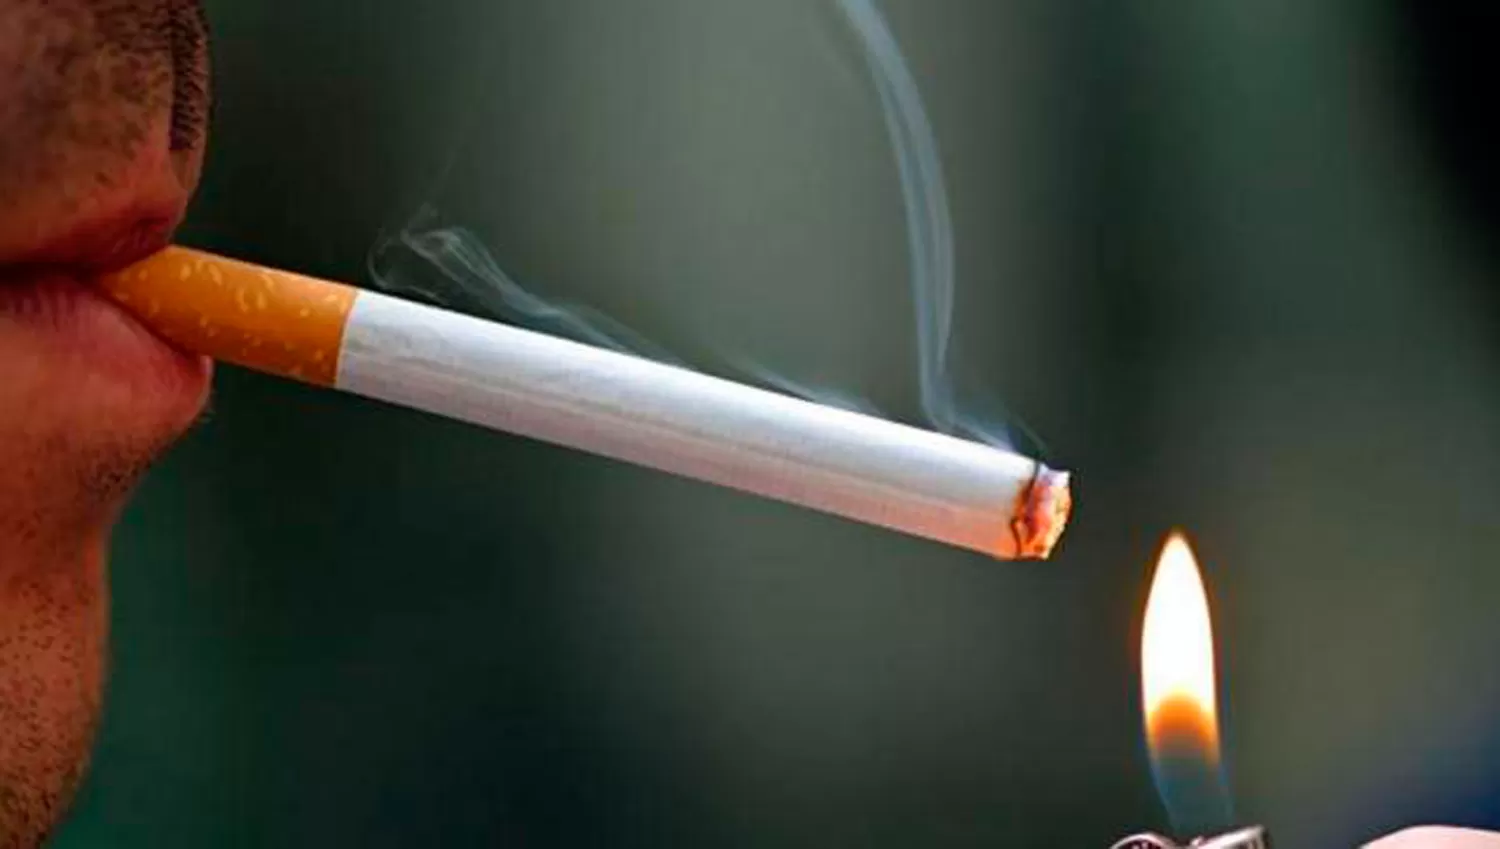 Otro aumento a la lista: los cigarrillos costarán un 7% más